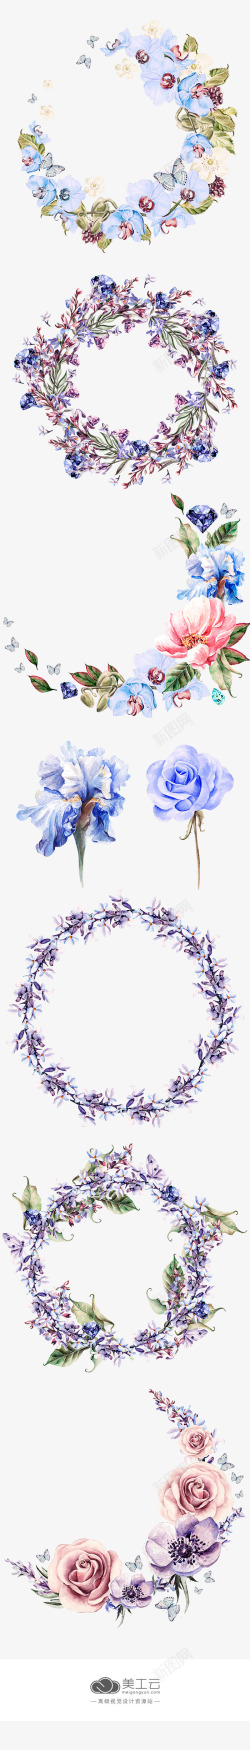 涂鸦植物花朵蓝色效果素材